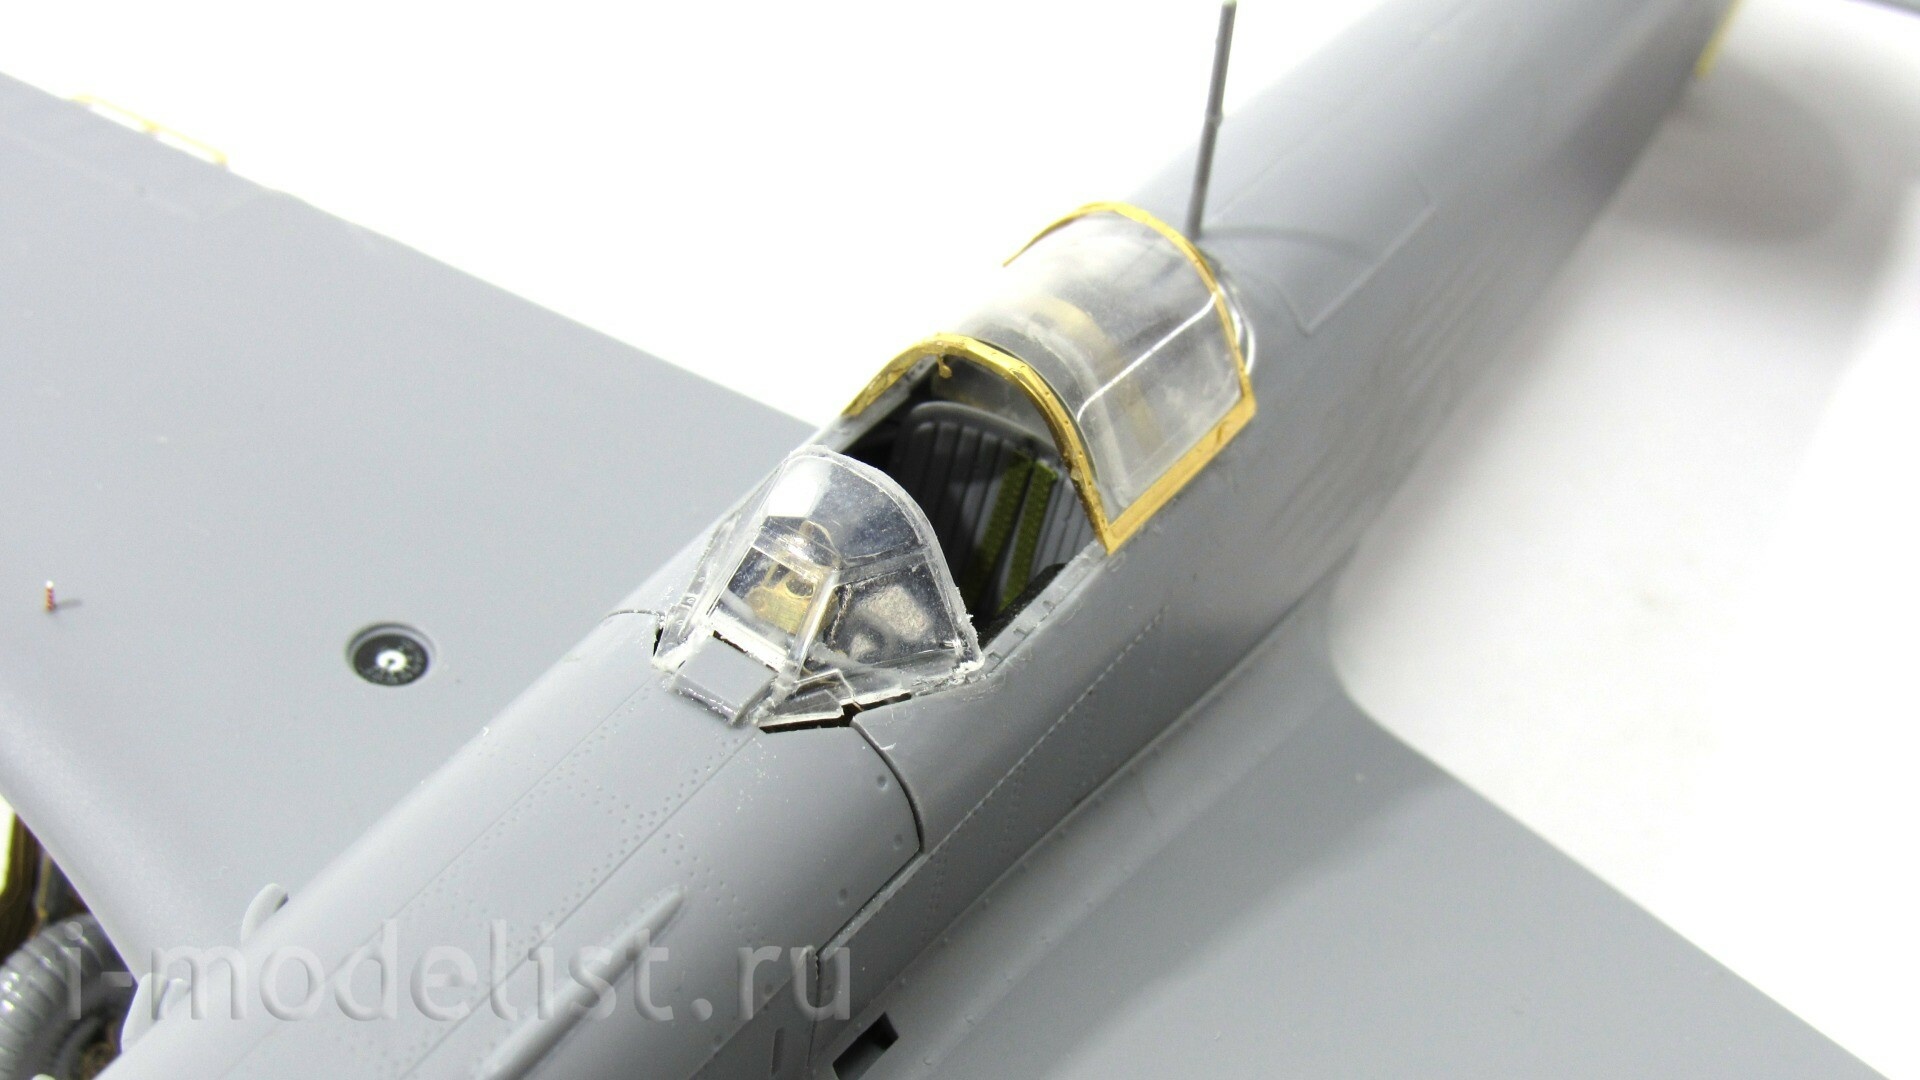 048035 Микродизайн 1/48 Набор фототравления для модели Як-9Д (Звезда)